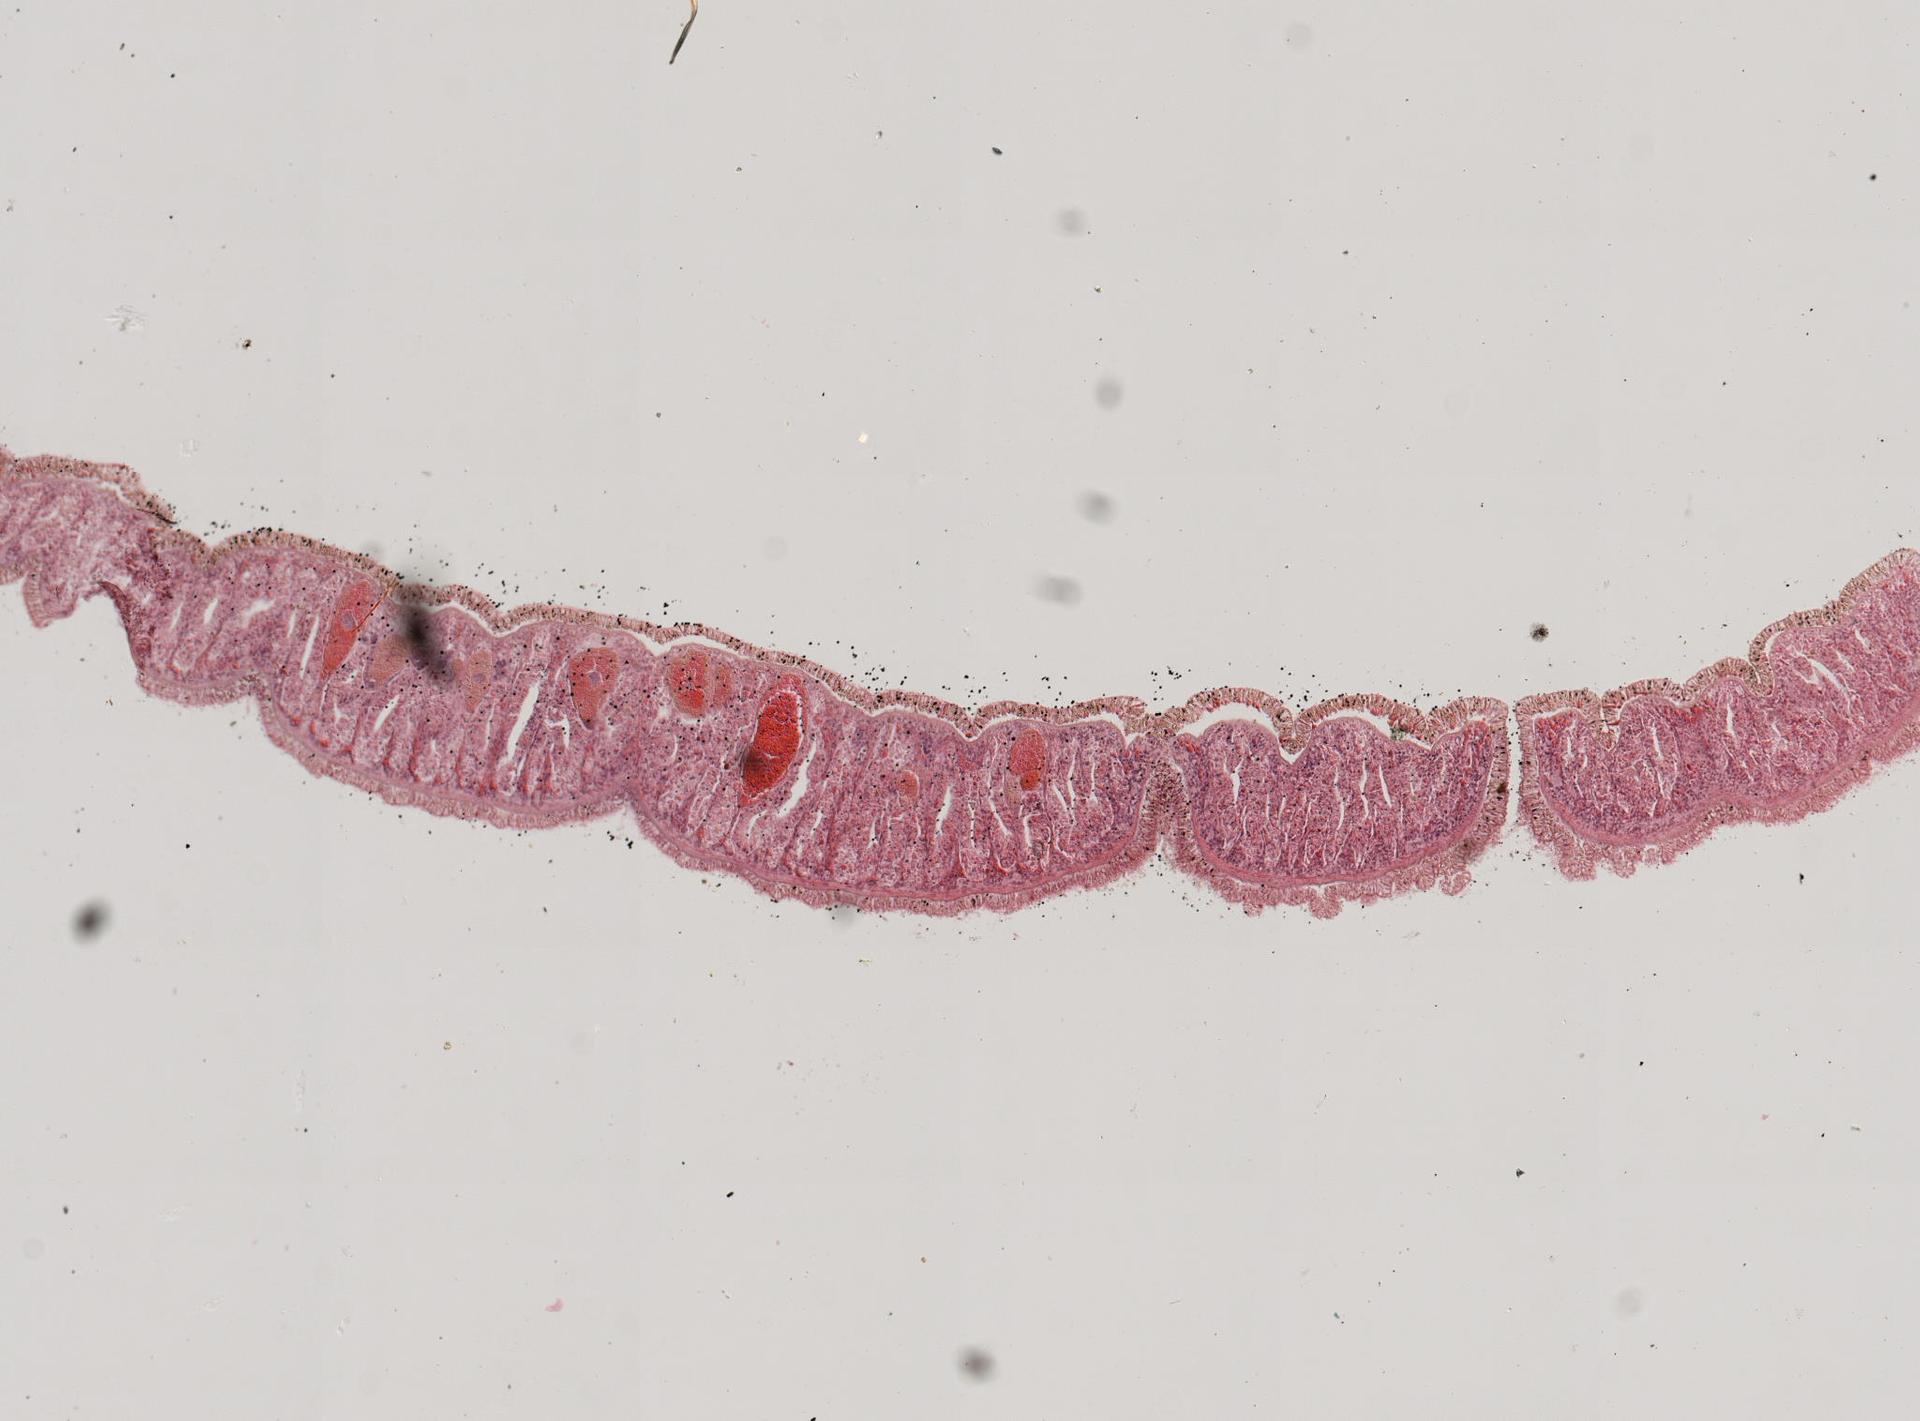 Cestoplanella microps image